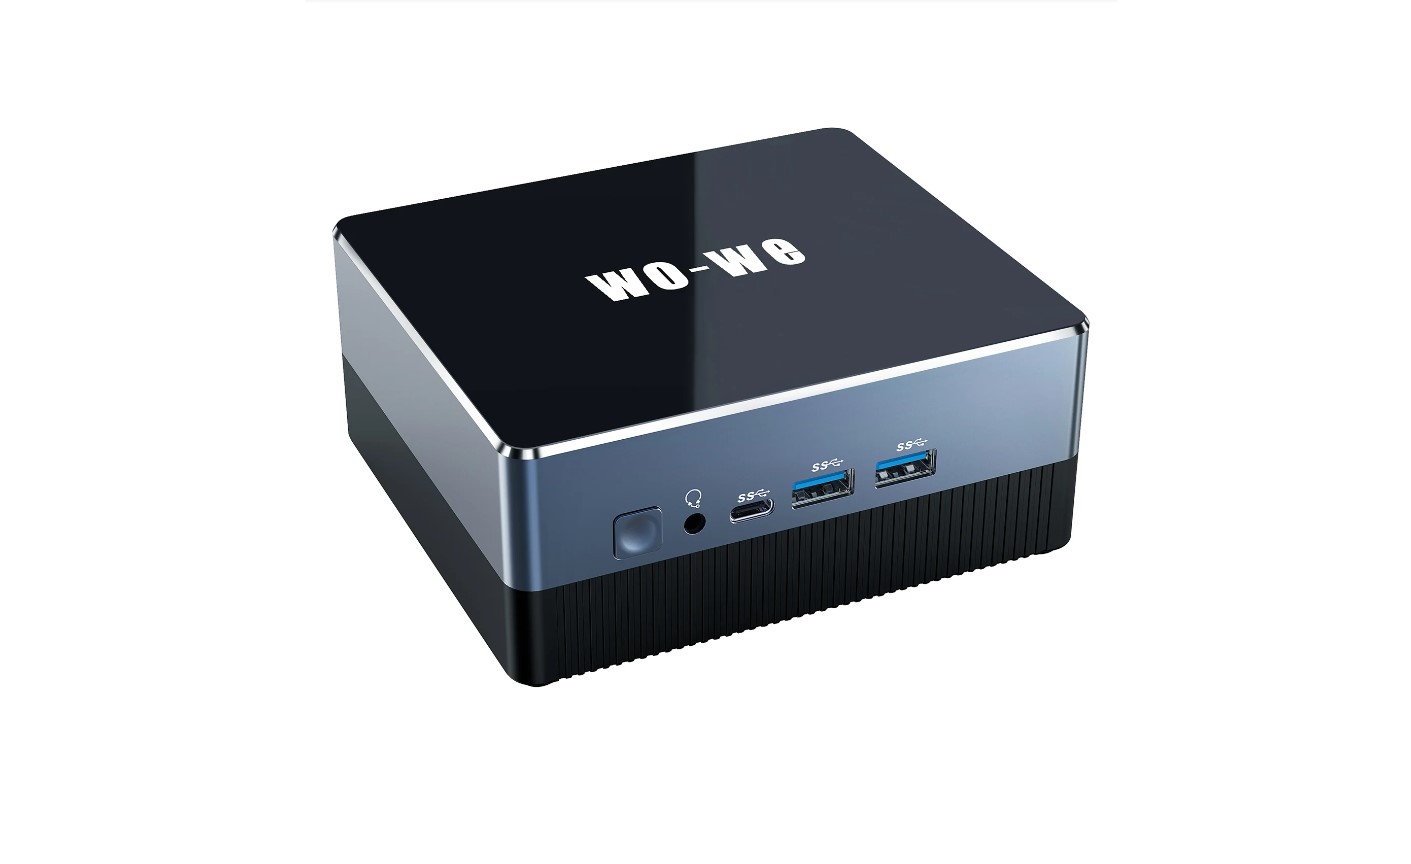 WO-WE AMD Ryzen 5 5600U Gaming Mini PC Review